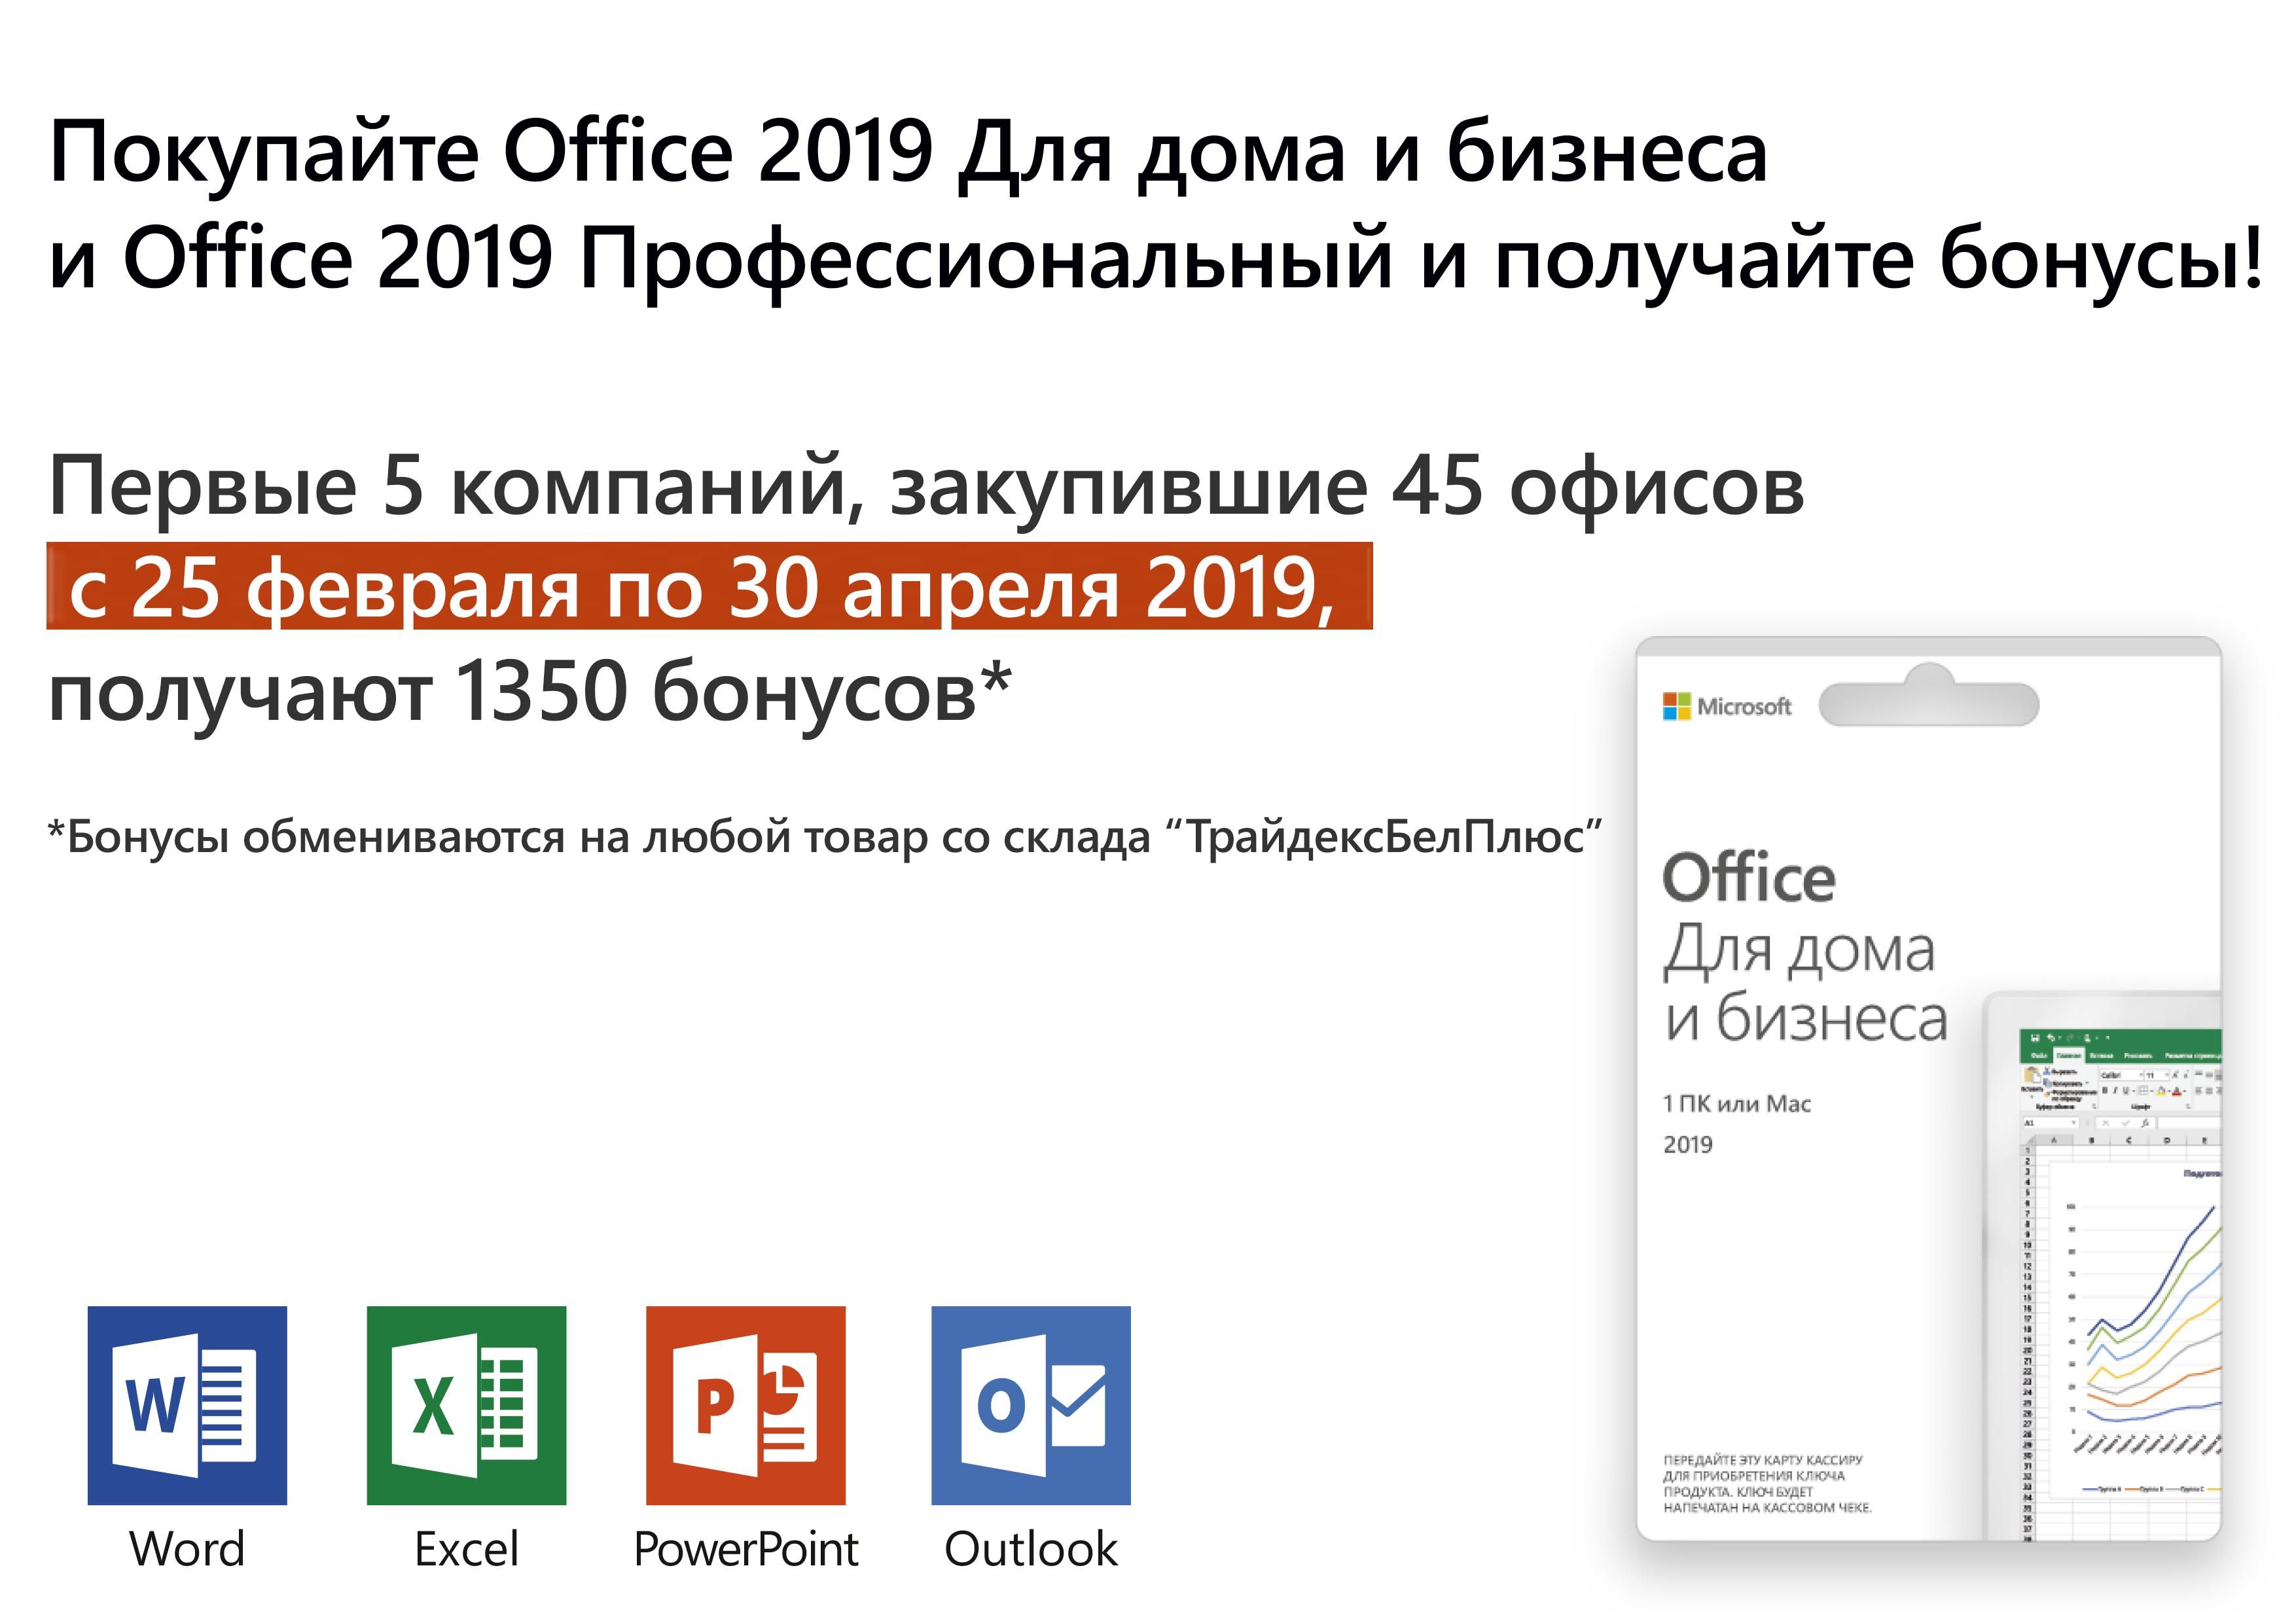 Покупайте Office 2019 Для дома и бизнеса  и Office 2019 Профессиональный и получайте бонусы!